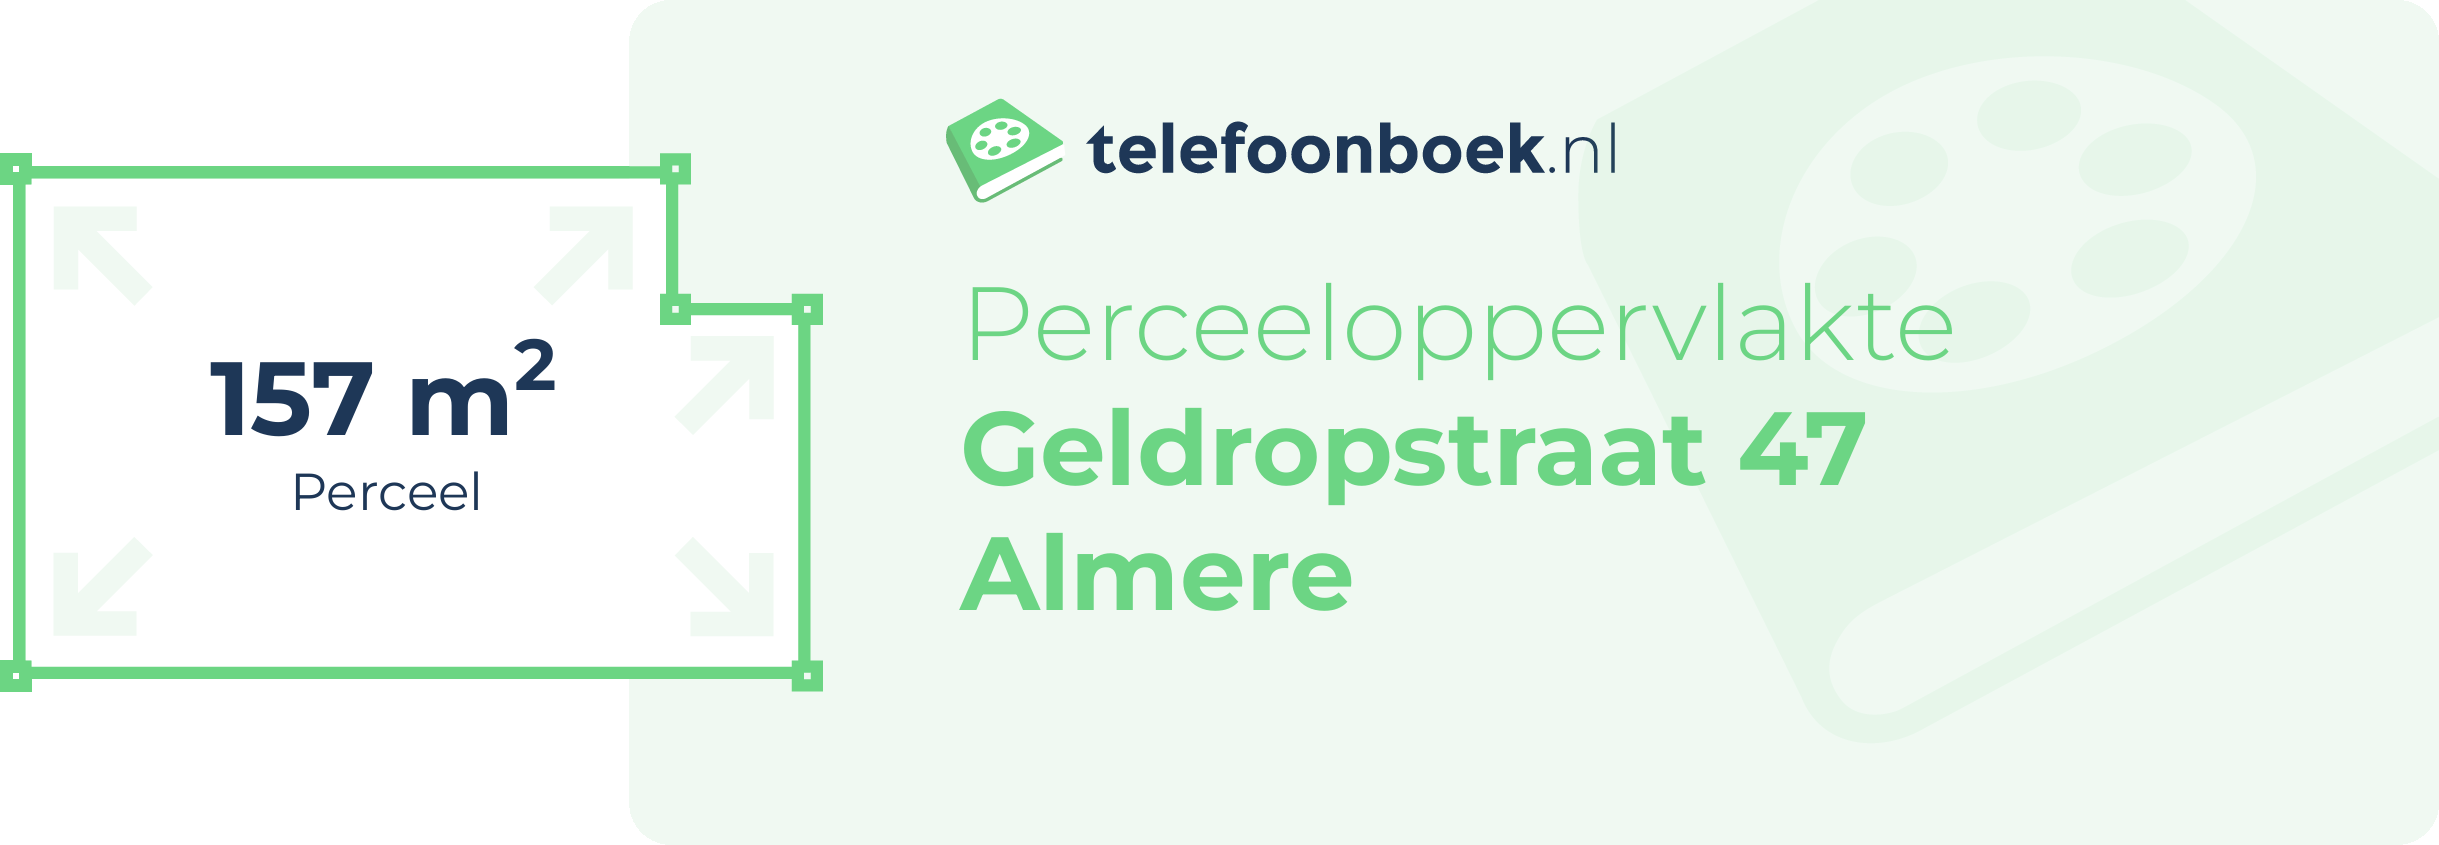 Perceeloppervlakte Geldropstraat 47 Almere